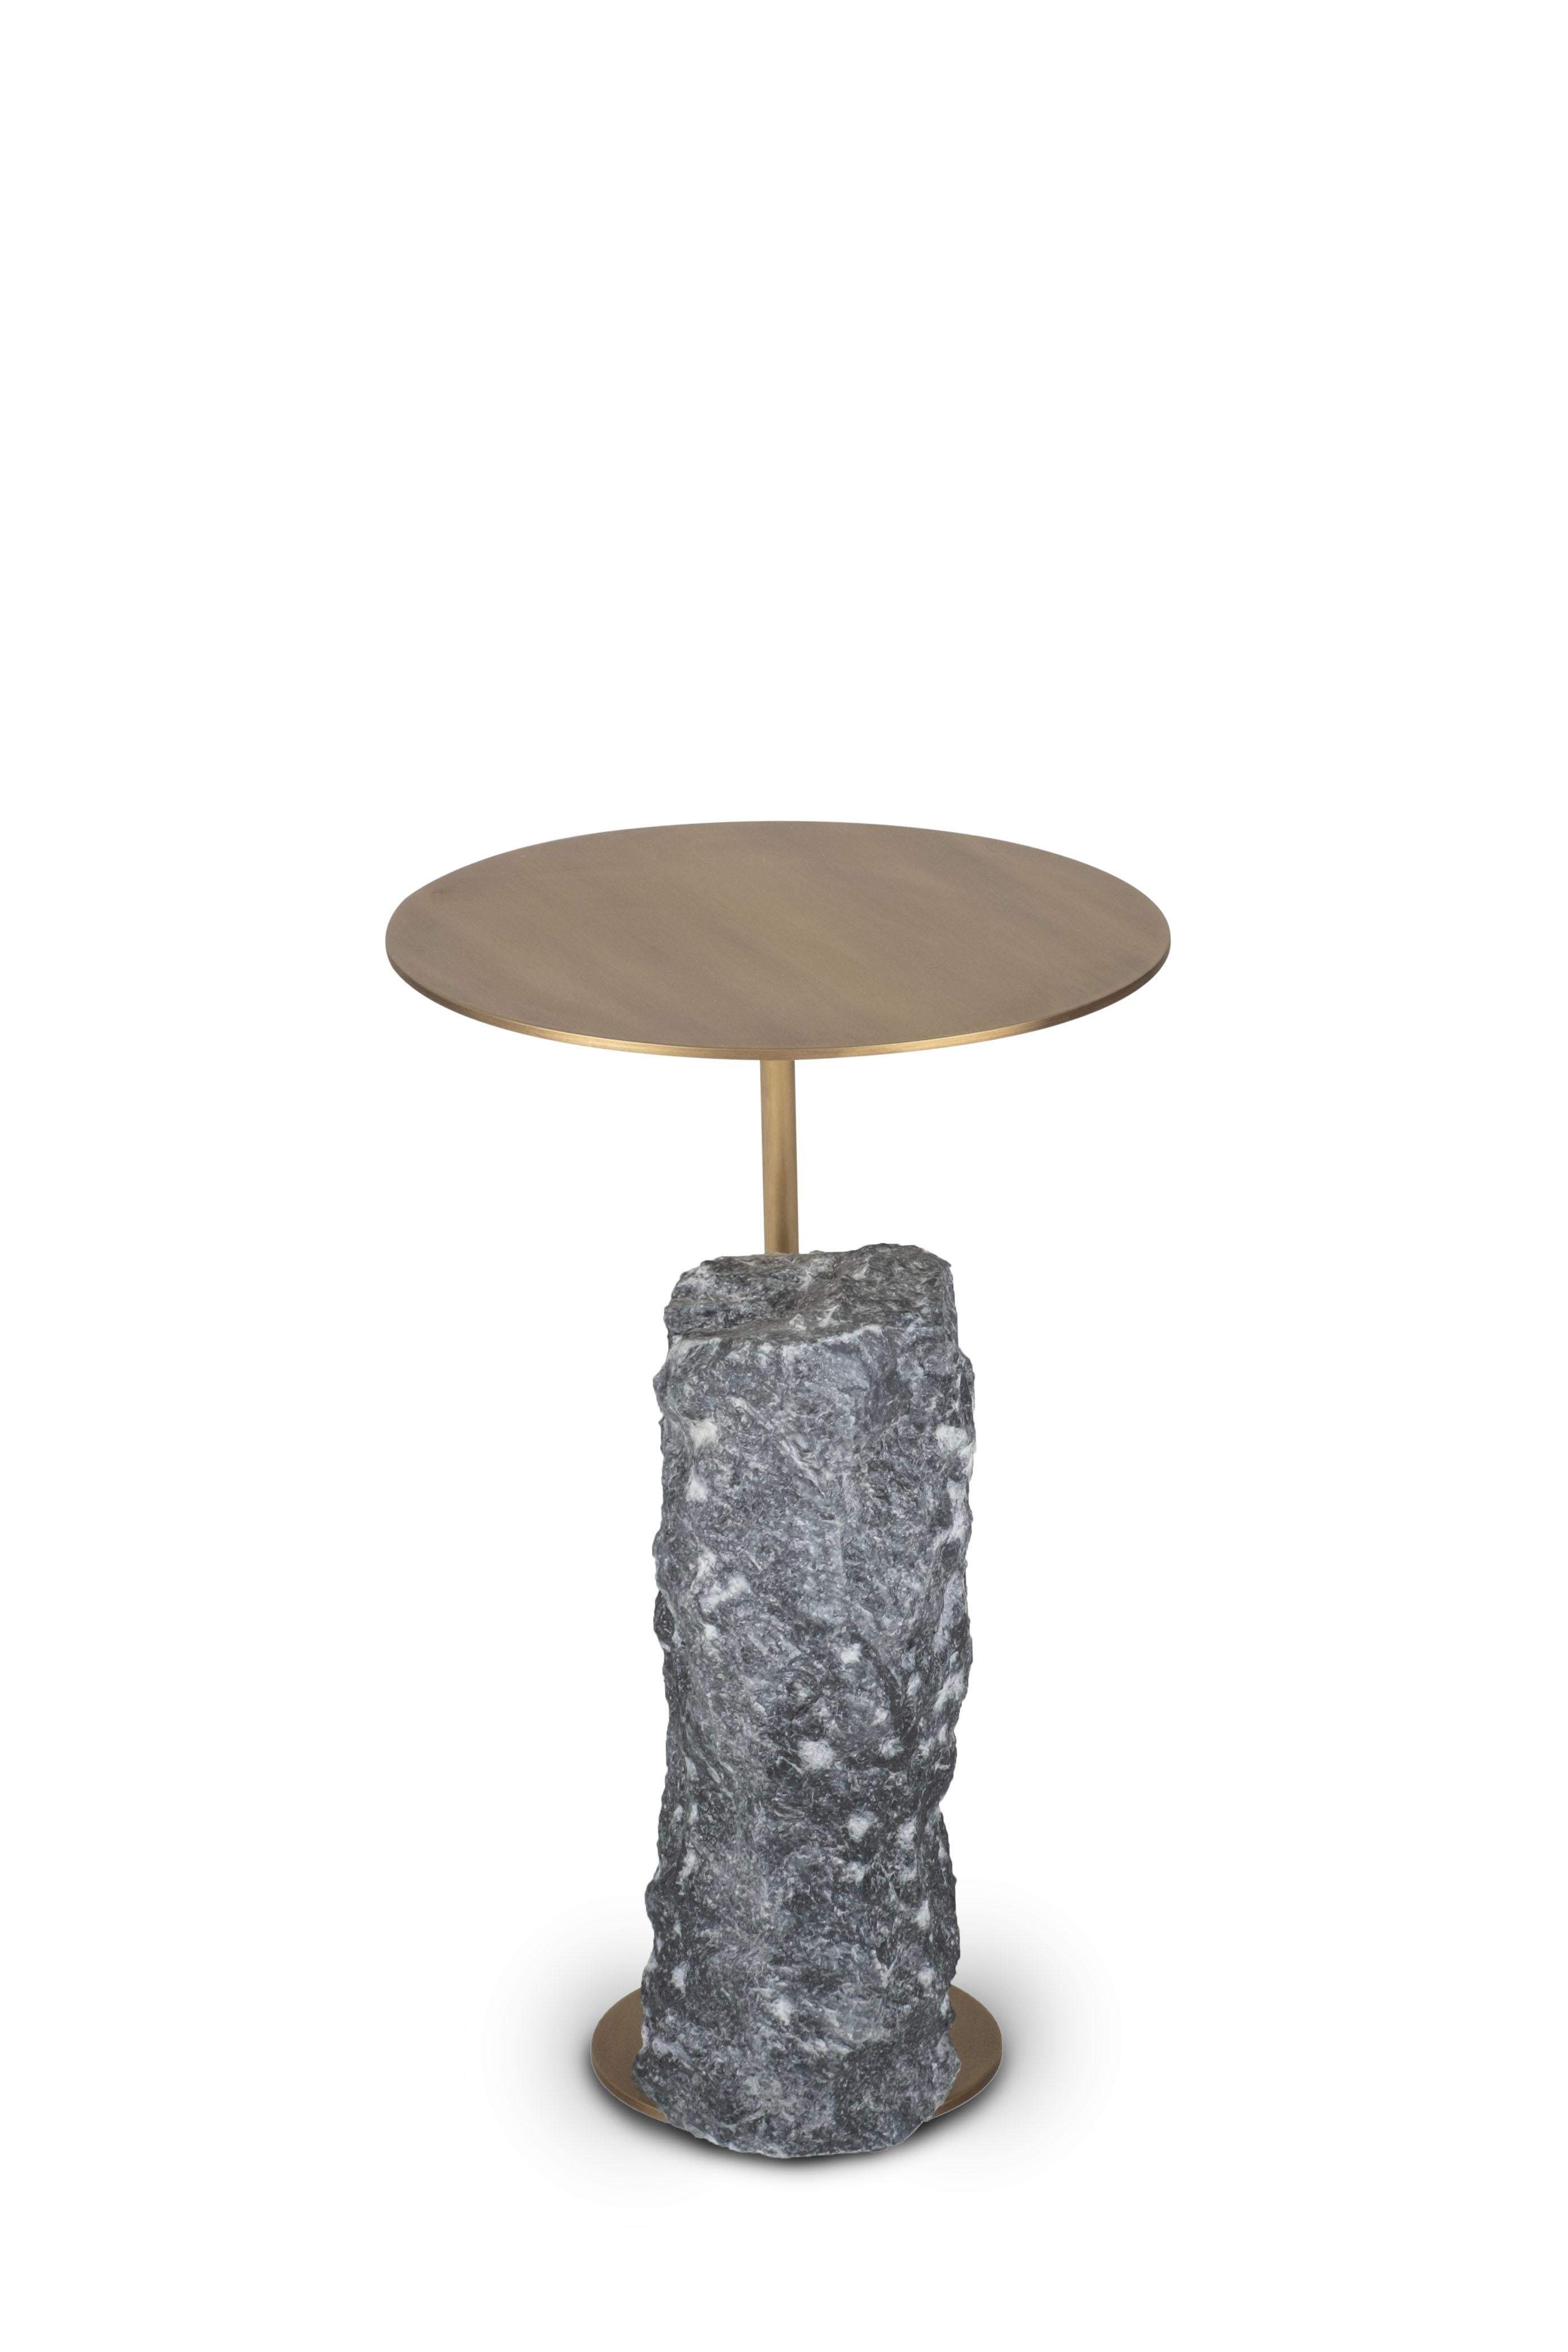 Moderne Table d'appoint Pico, marbre argenté Portoro, fabriquée à la main au Portugal par Greenapple en vente